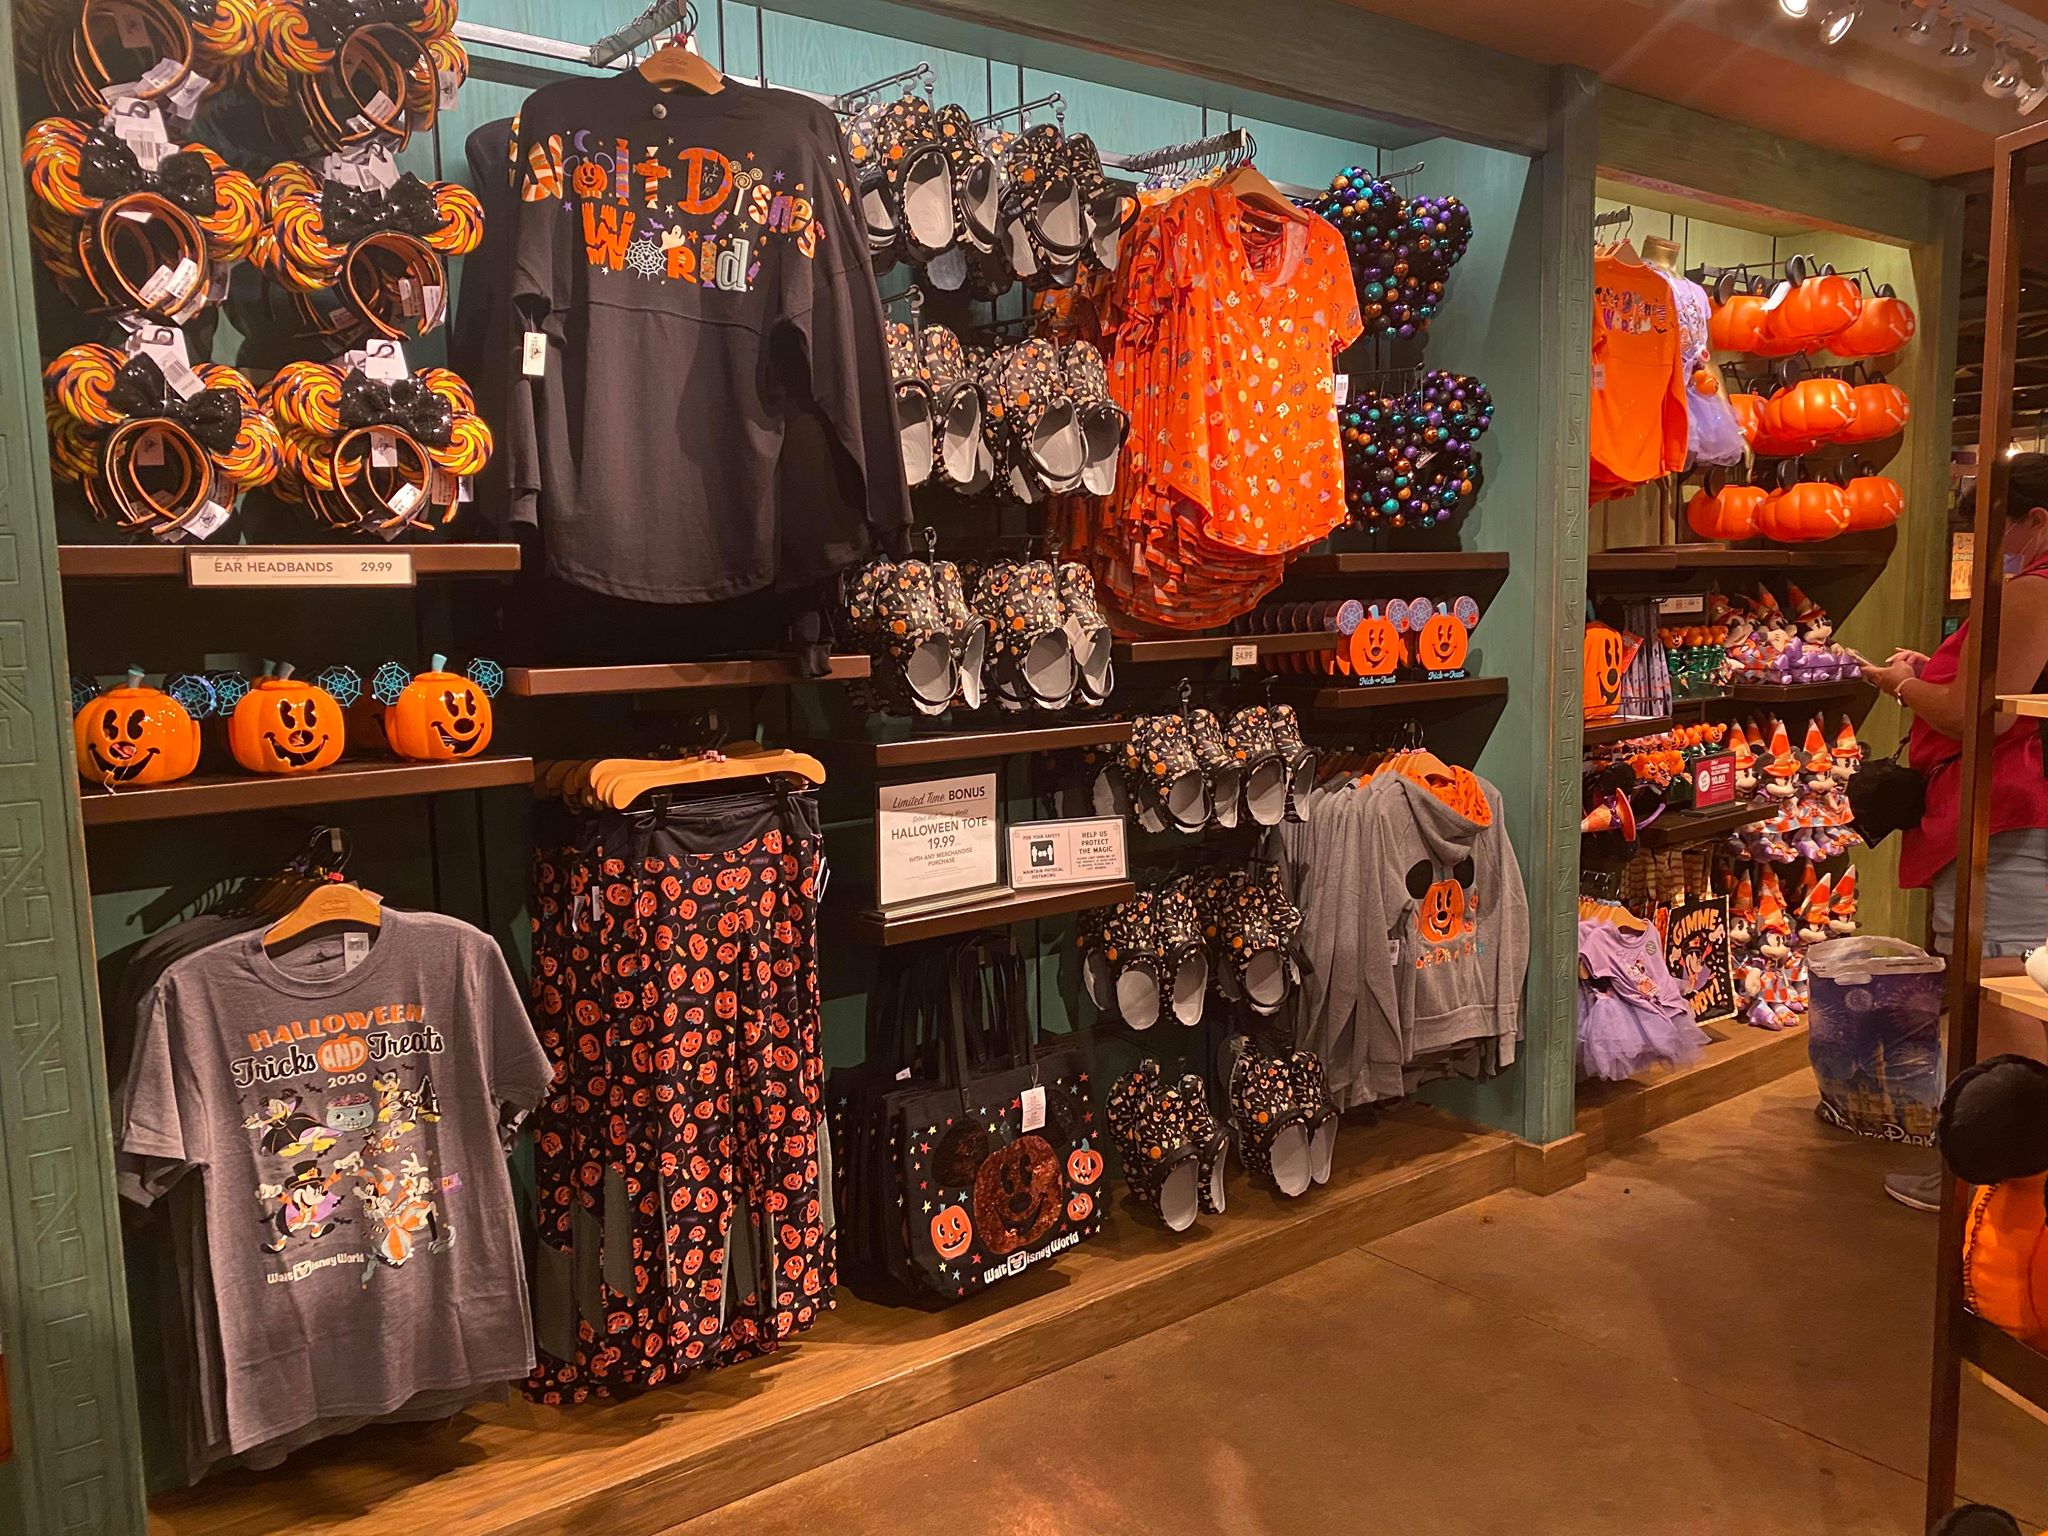 Merch at Animal Kingdom is Getting Wildly Spooky! - Disney Fashion Blog